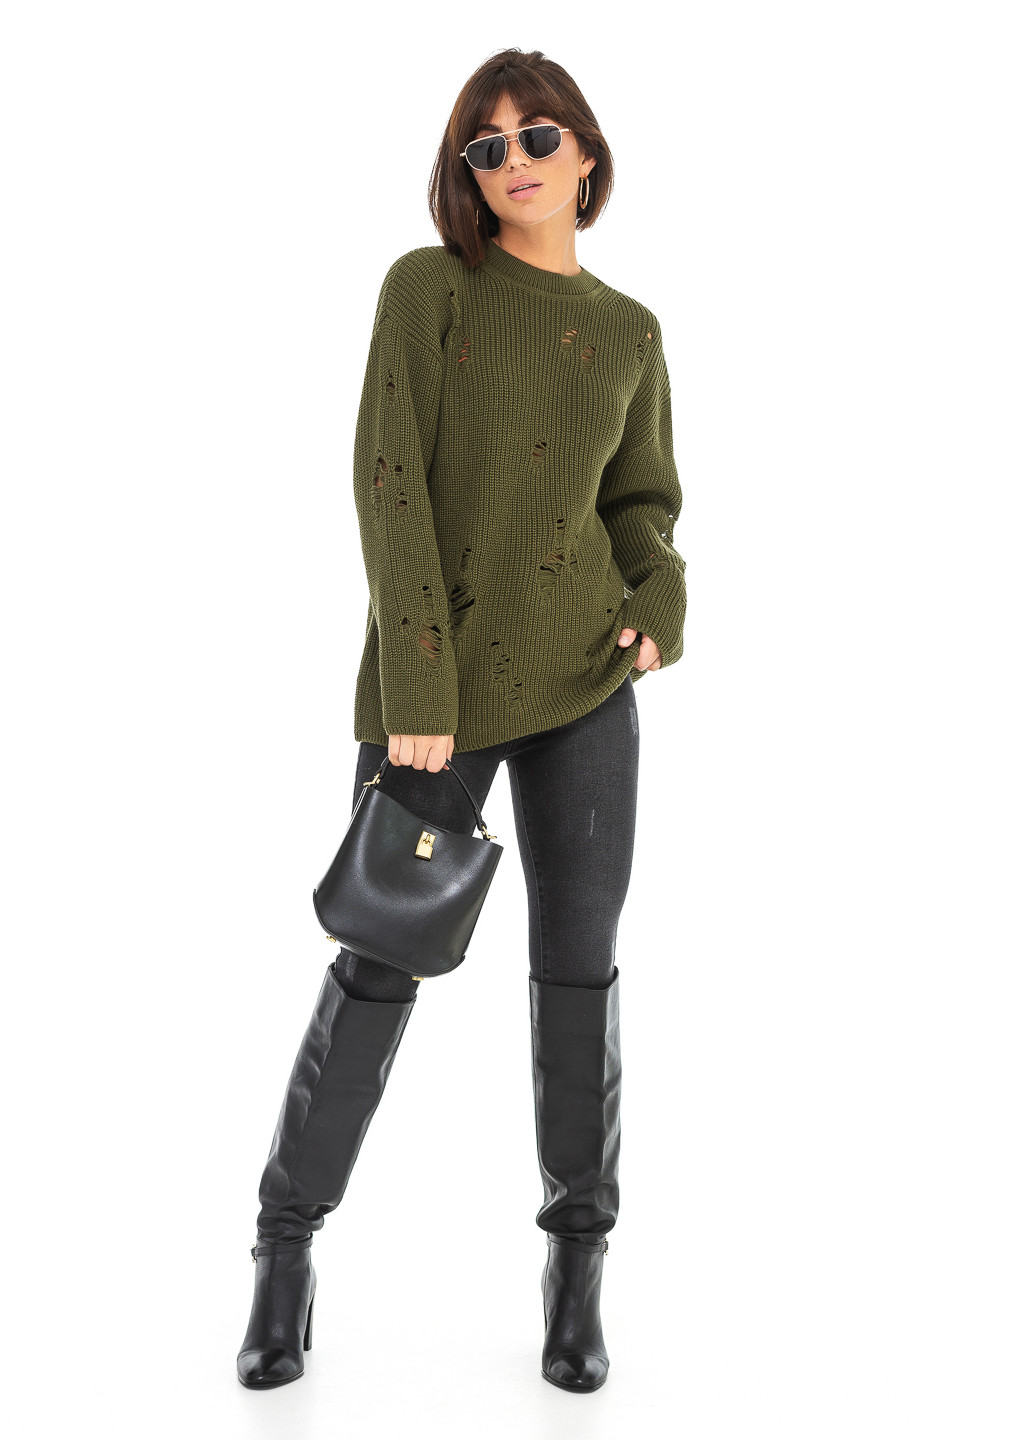 Оливковый (хаки) женский свитер с дырками. SVTR